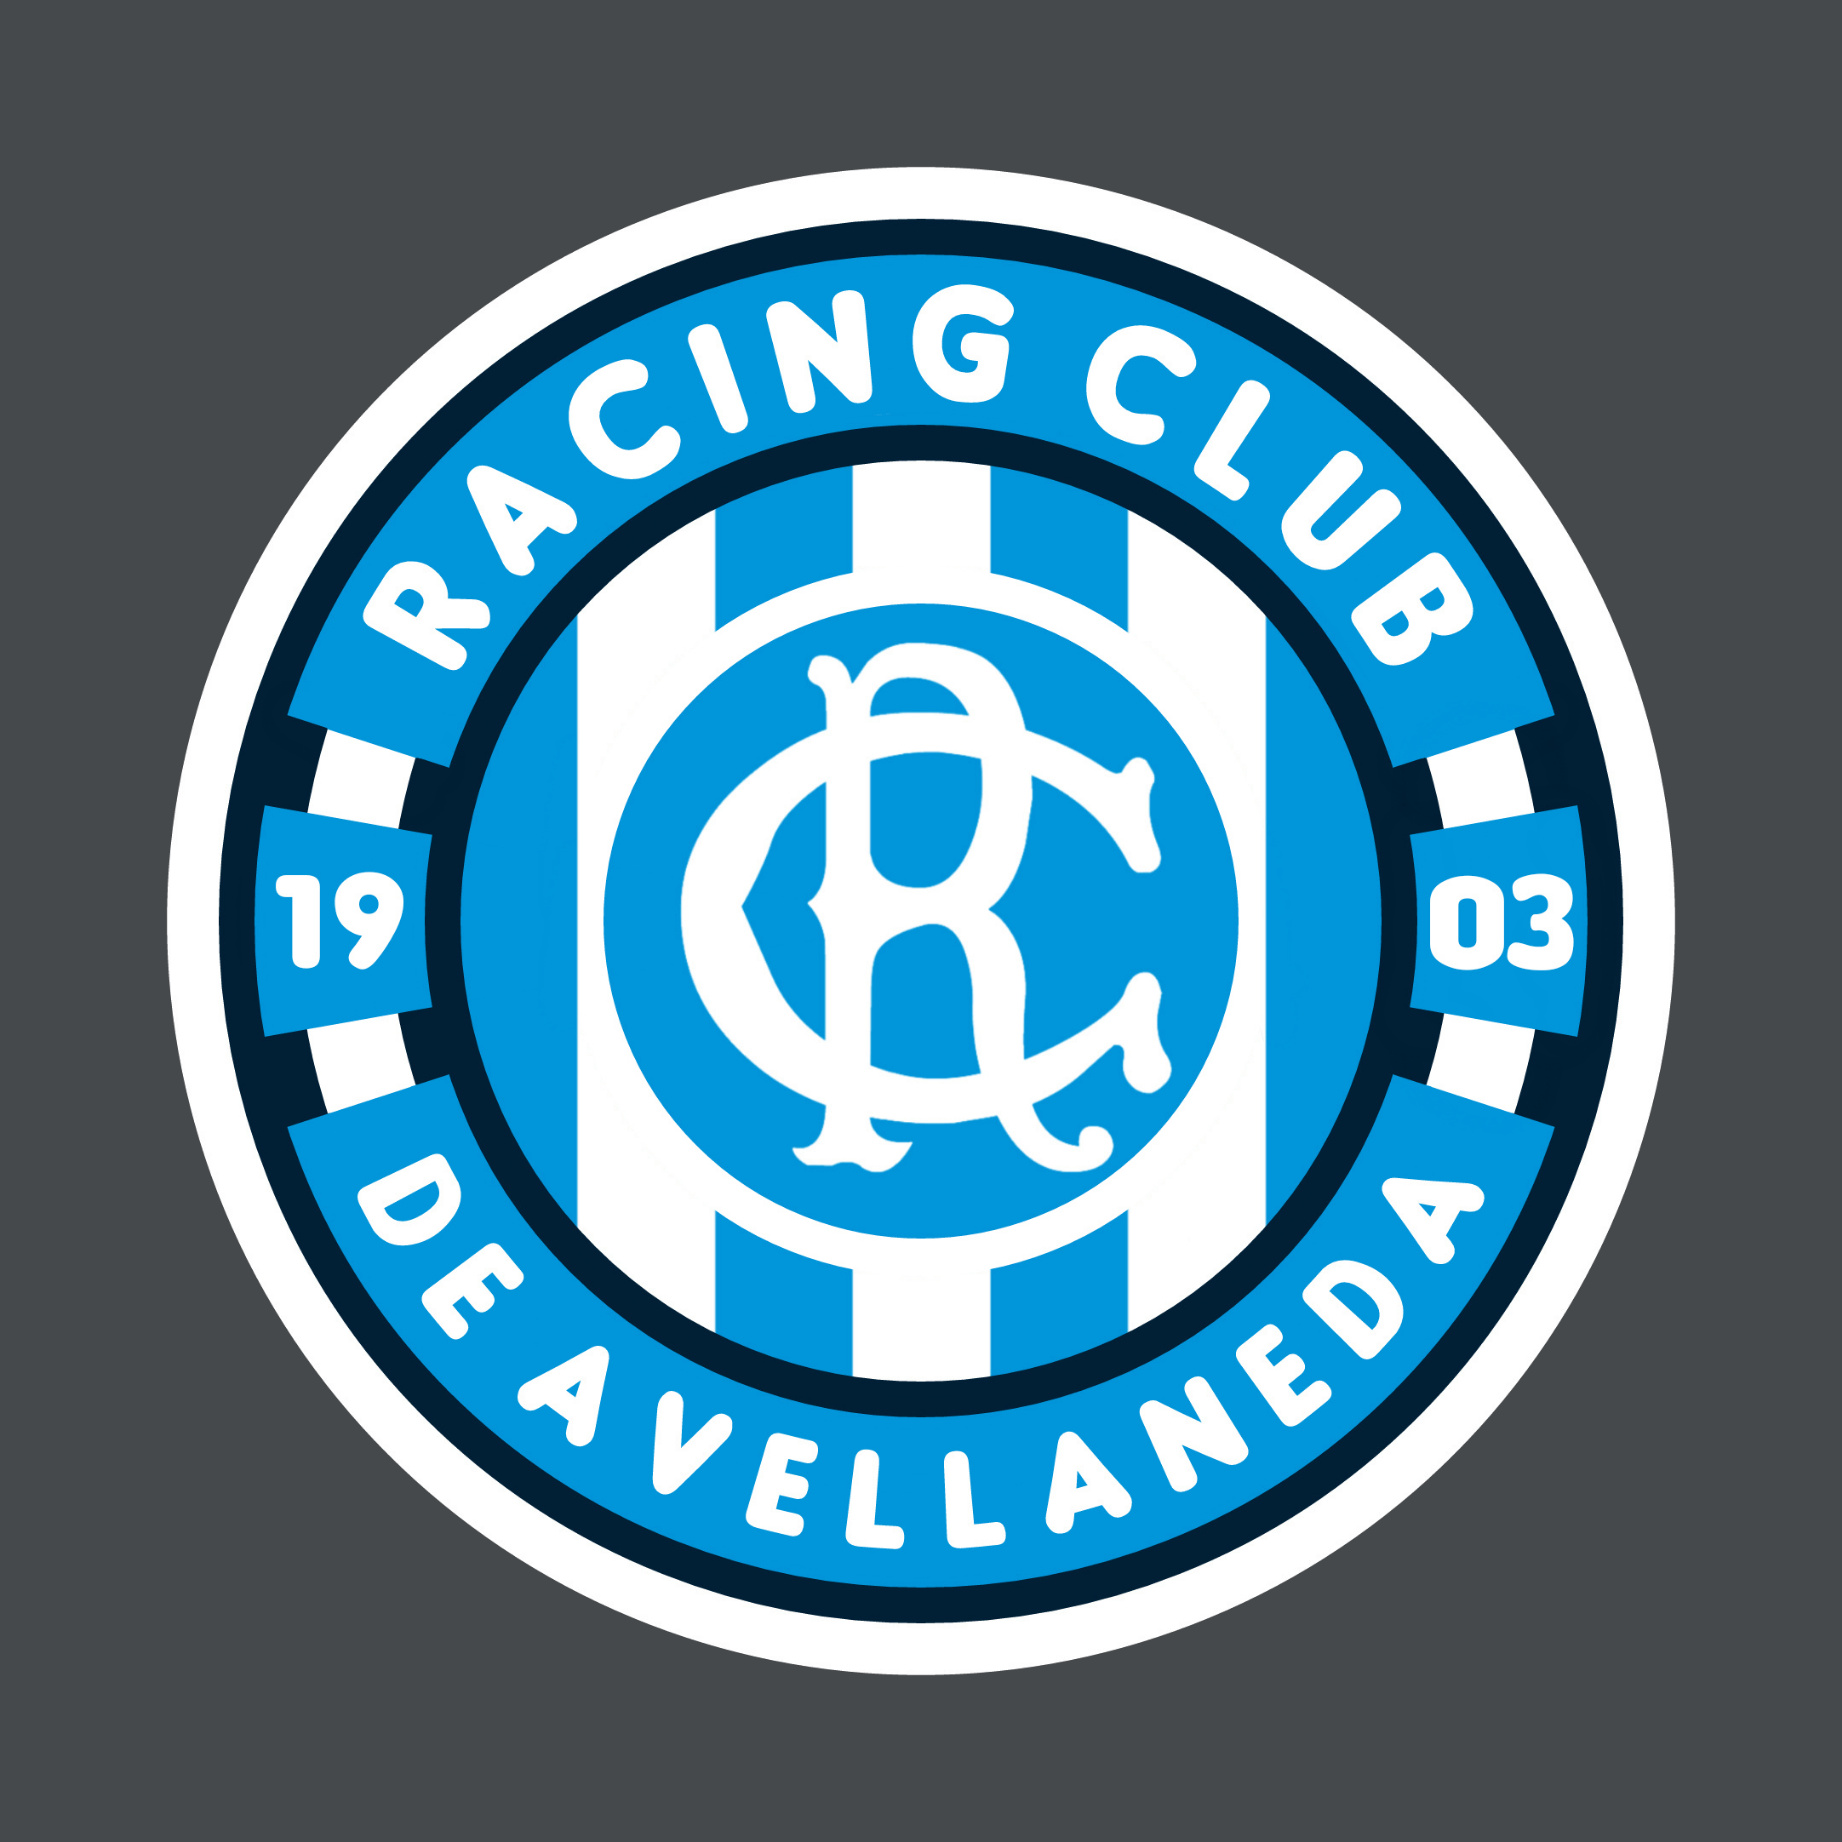 Racing Club de Avellaneda - Redesign